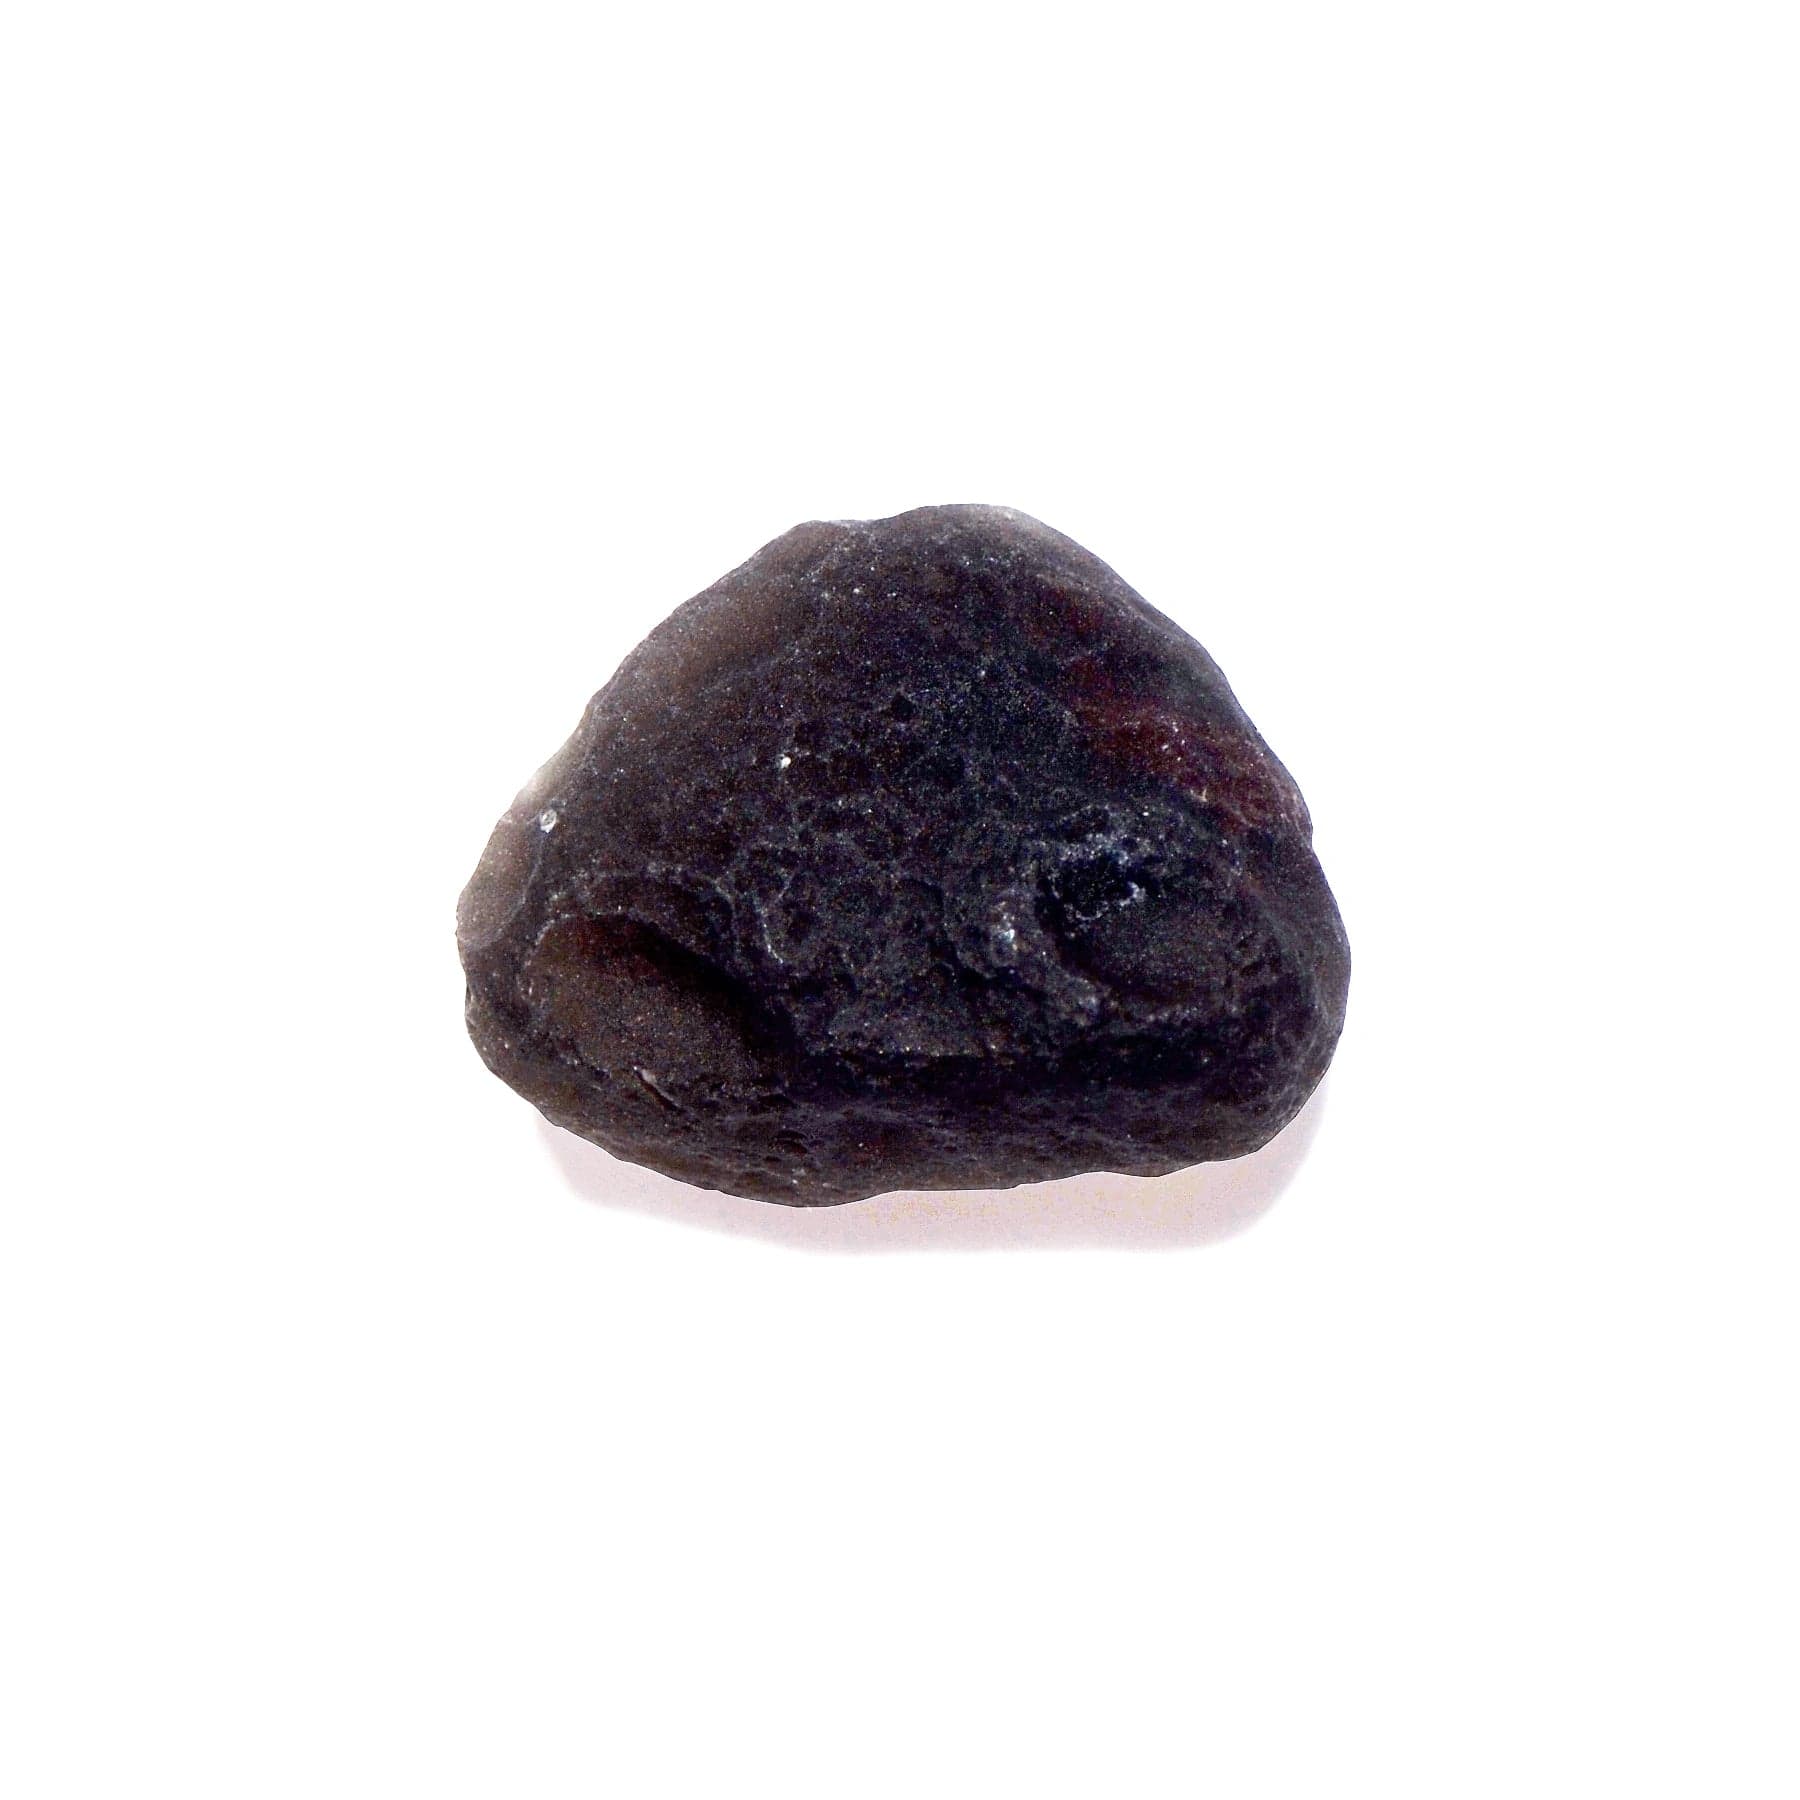 Saffordite Tumbled Stone - Small